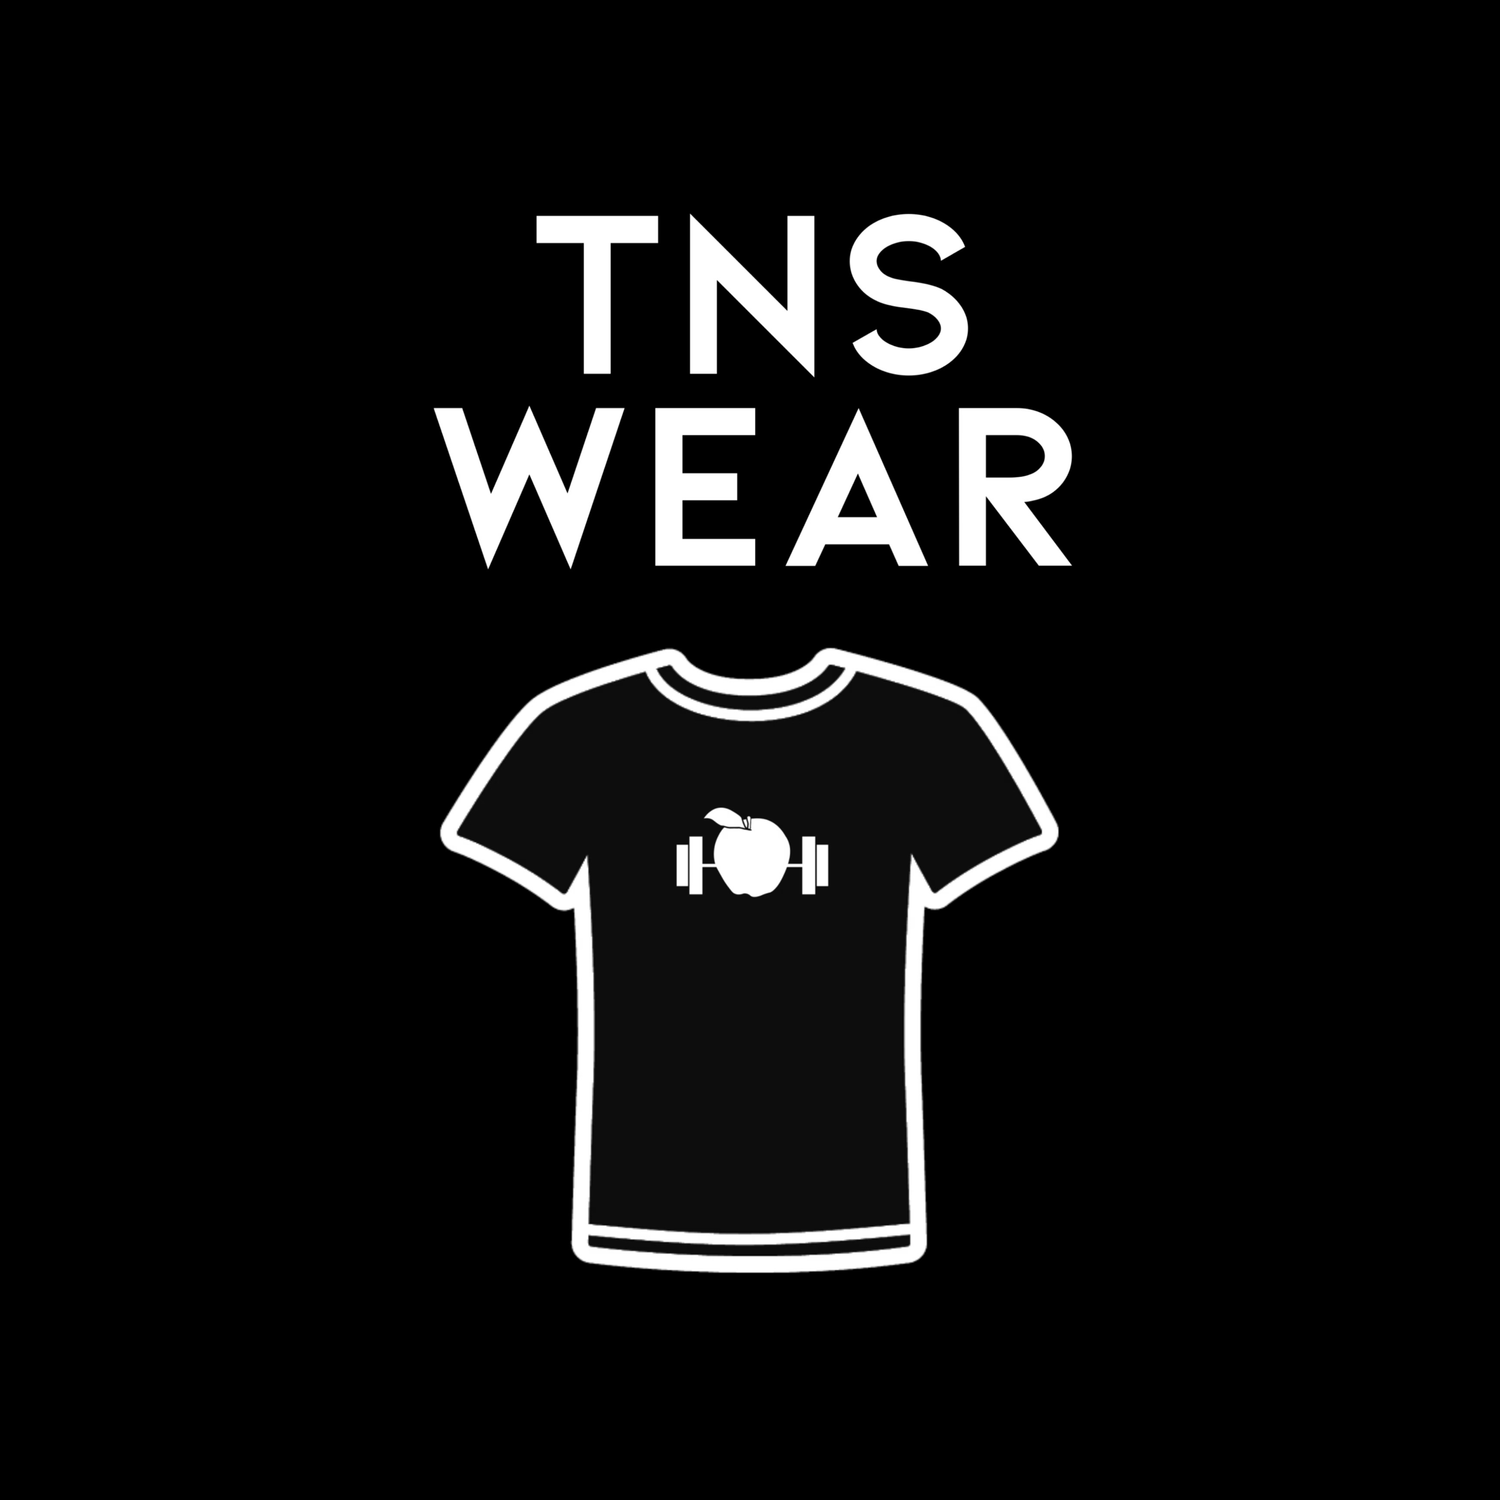 TNS Wear